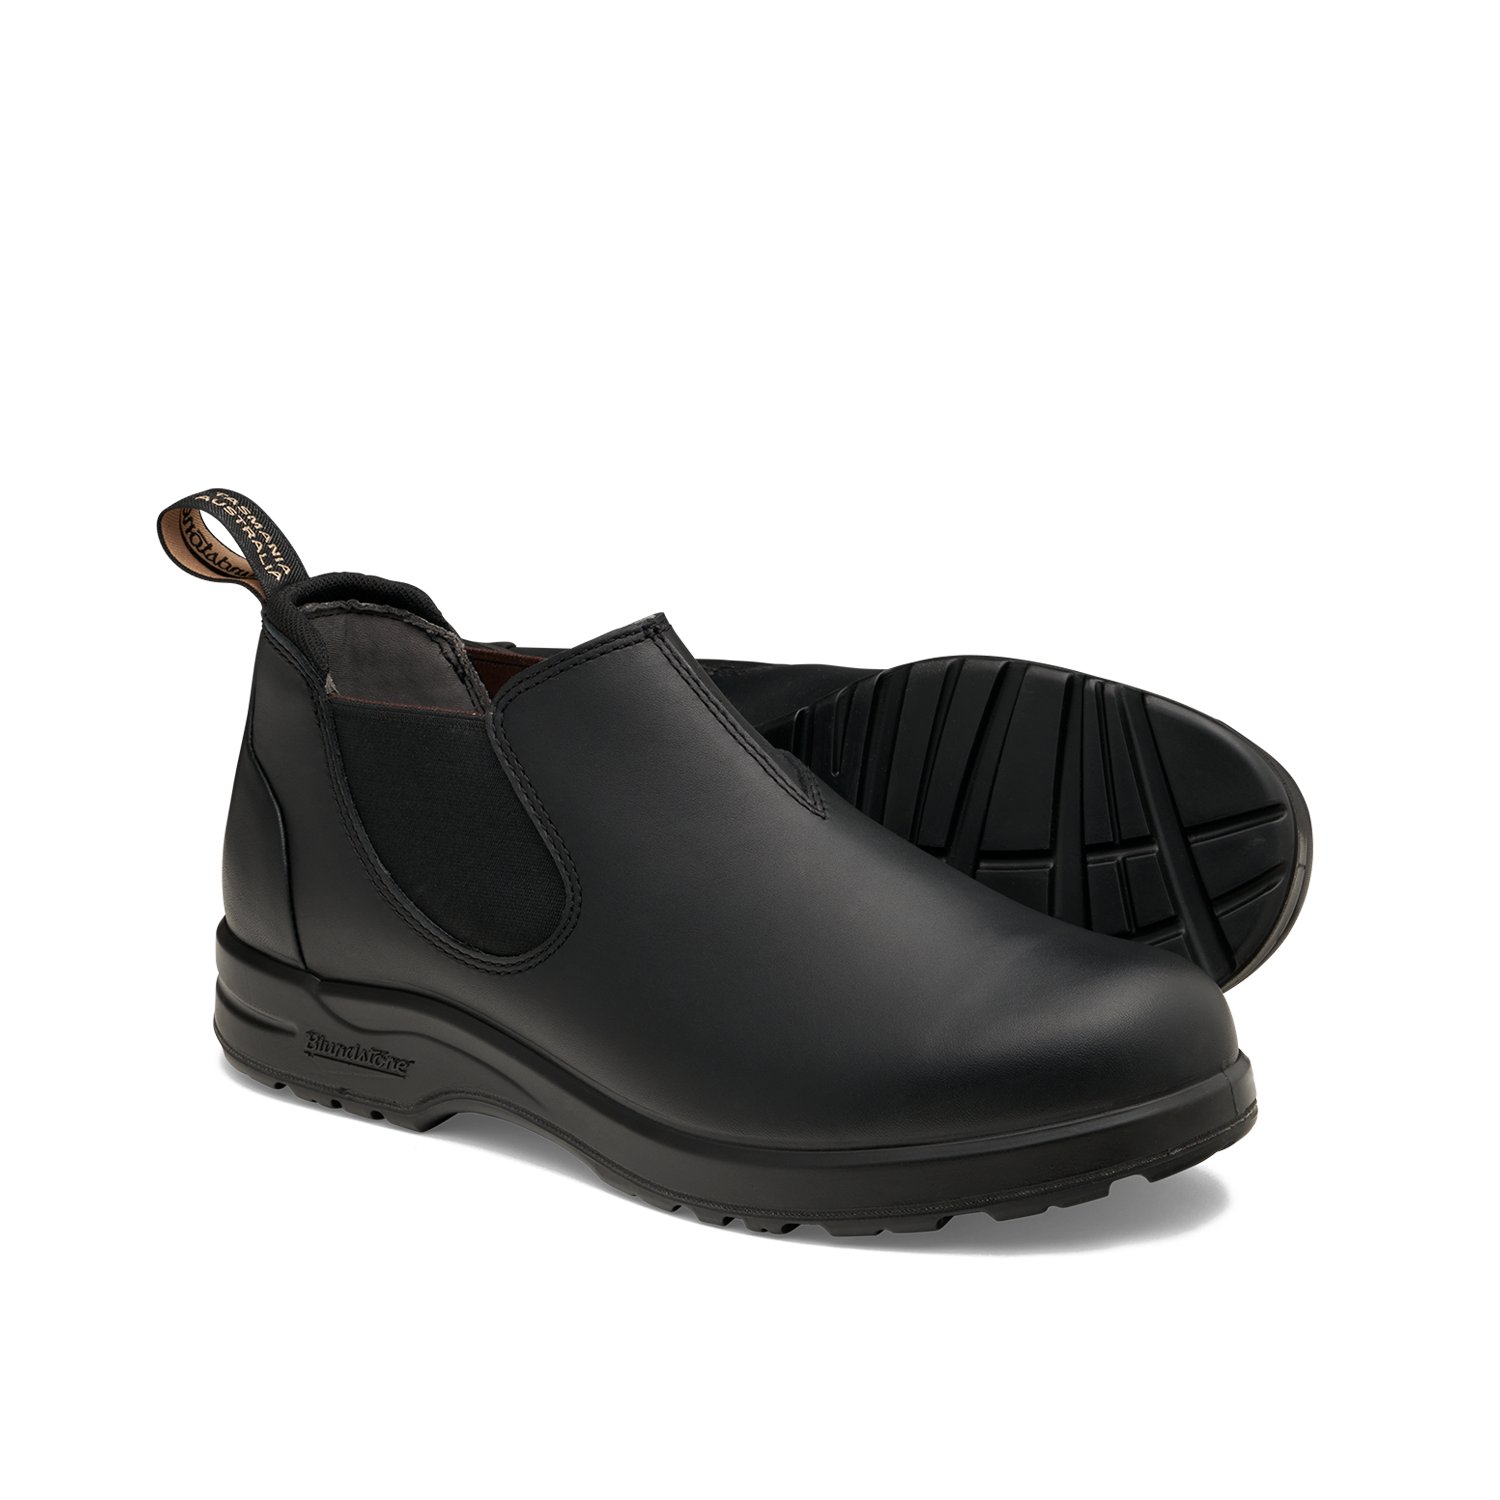 Blundstone 2380 All-Terrain Shoe Black